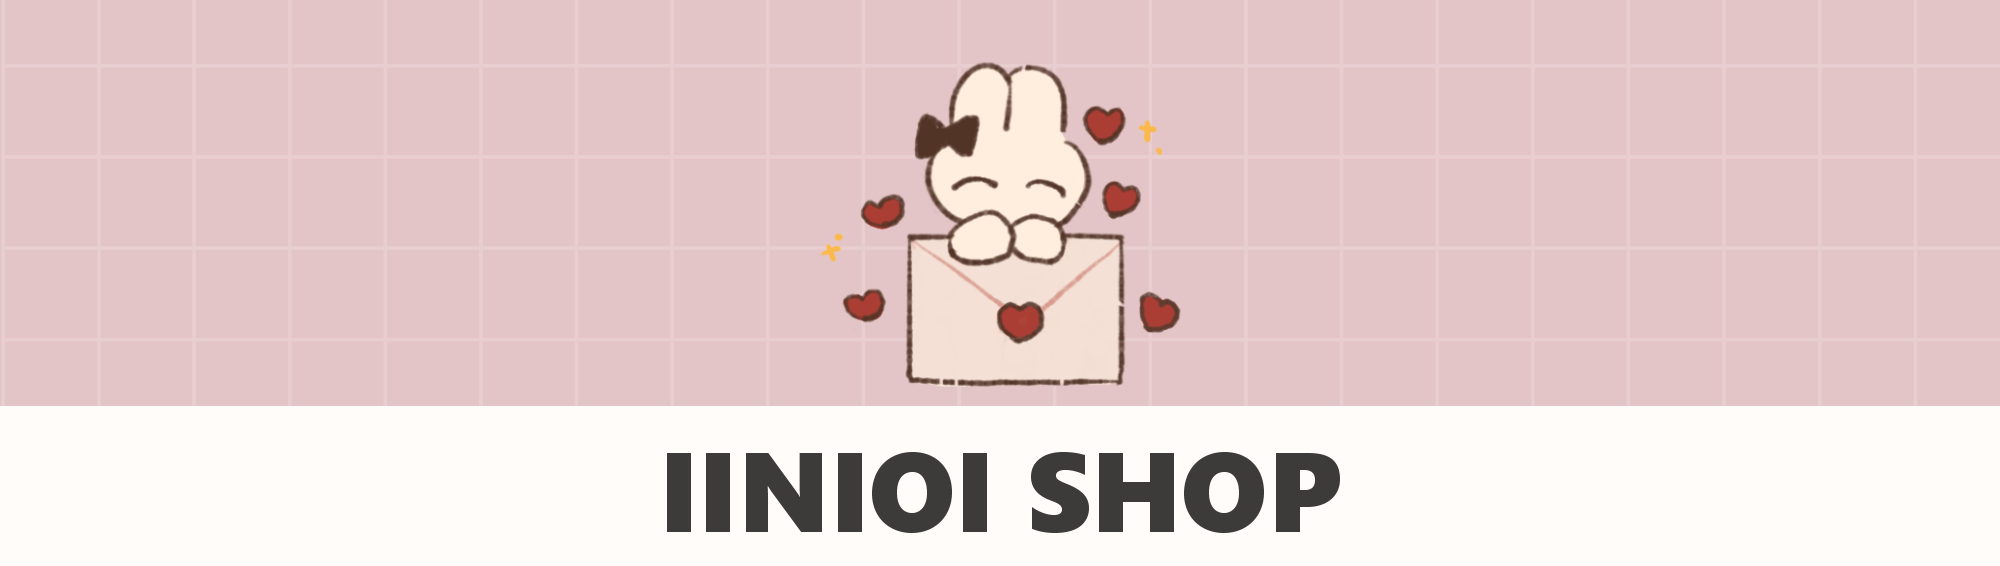 iinioi shop